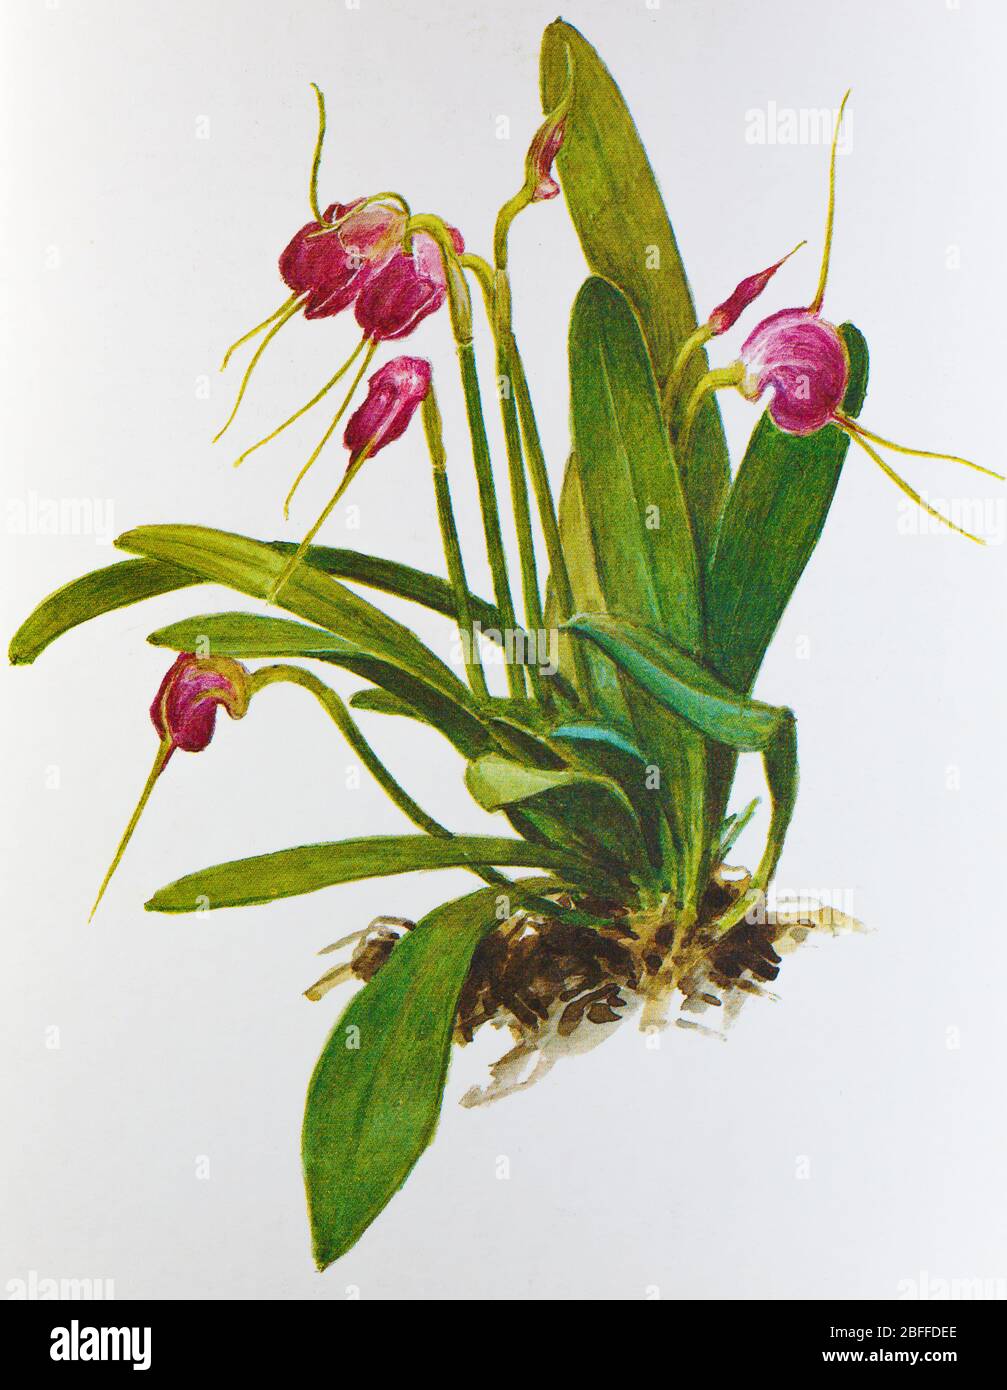 Masdevallia infracta, orchid flower, Soviet postcard illustration, 1988 Stock Photo